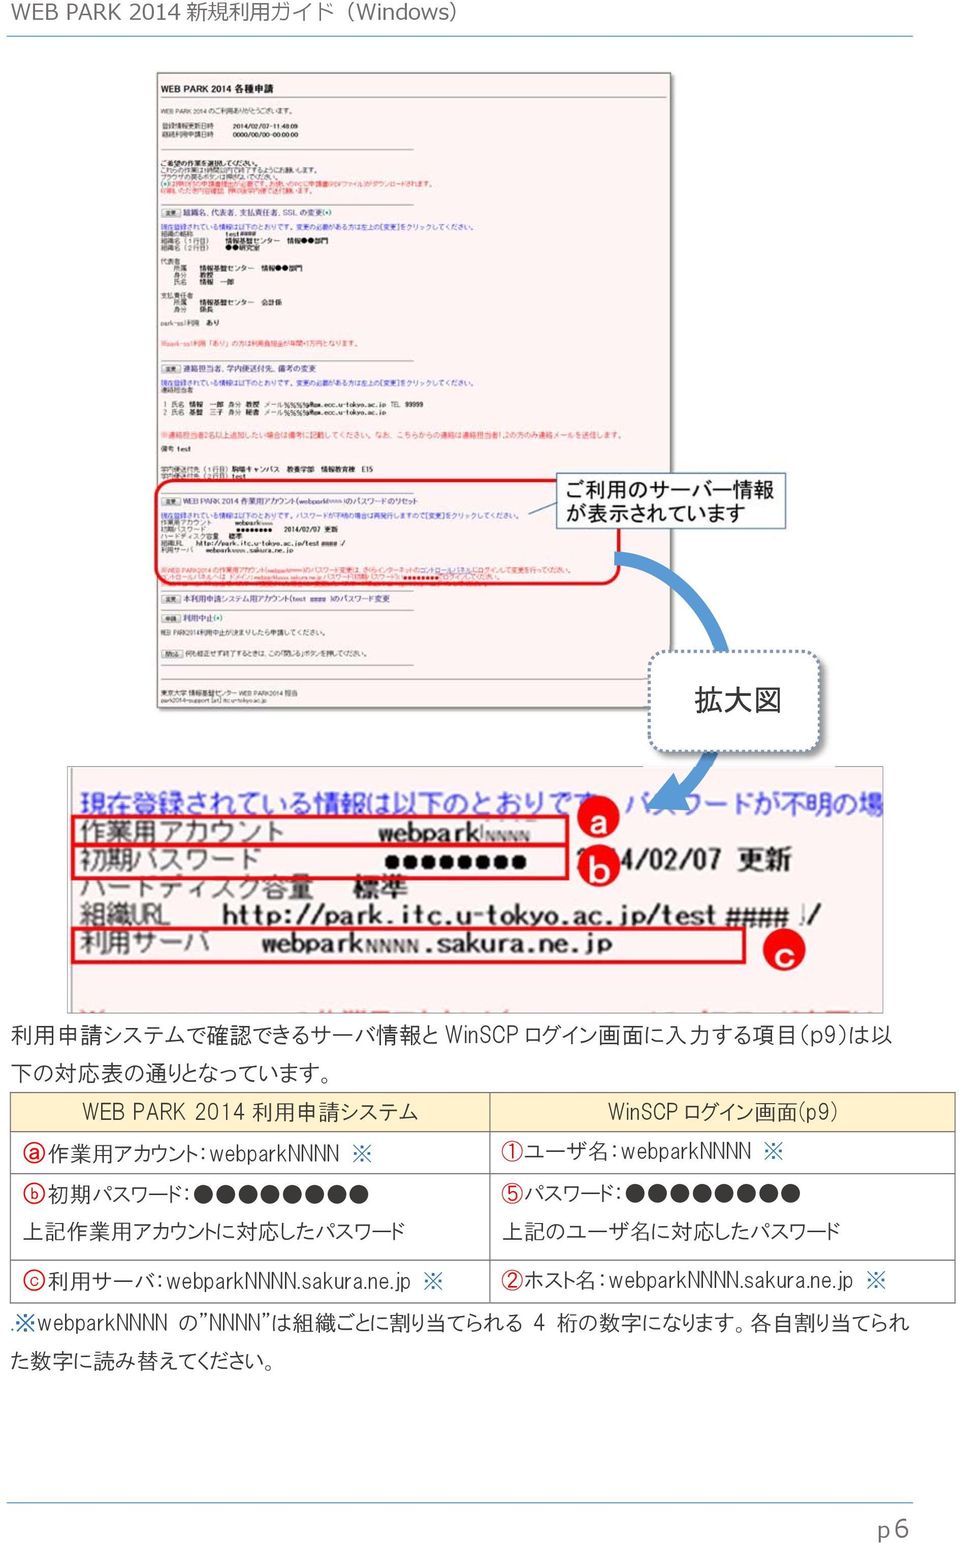 上 記 作 業 用 アカウントに 対 応 したパスワード 上 記 のユーザ 名 に 対 応 したパスワード c 利 用 サーバ:webparkNNNN.sakura.ne.